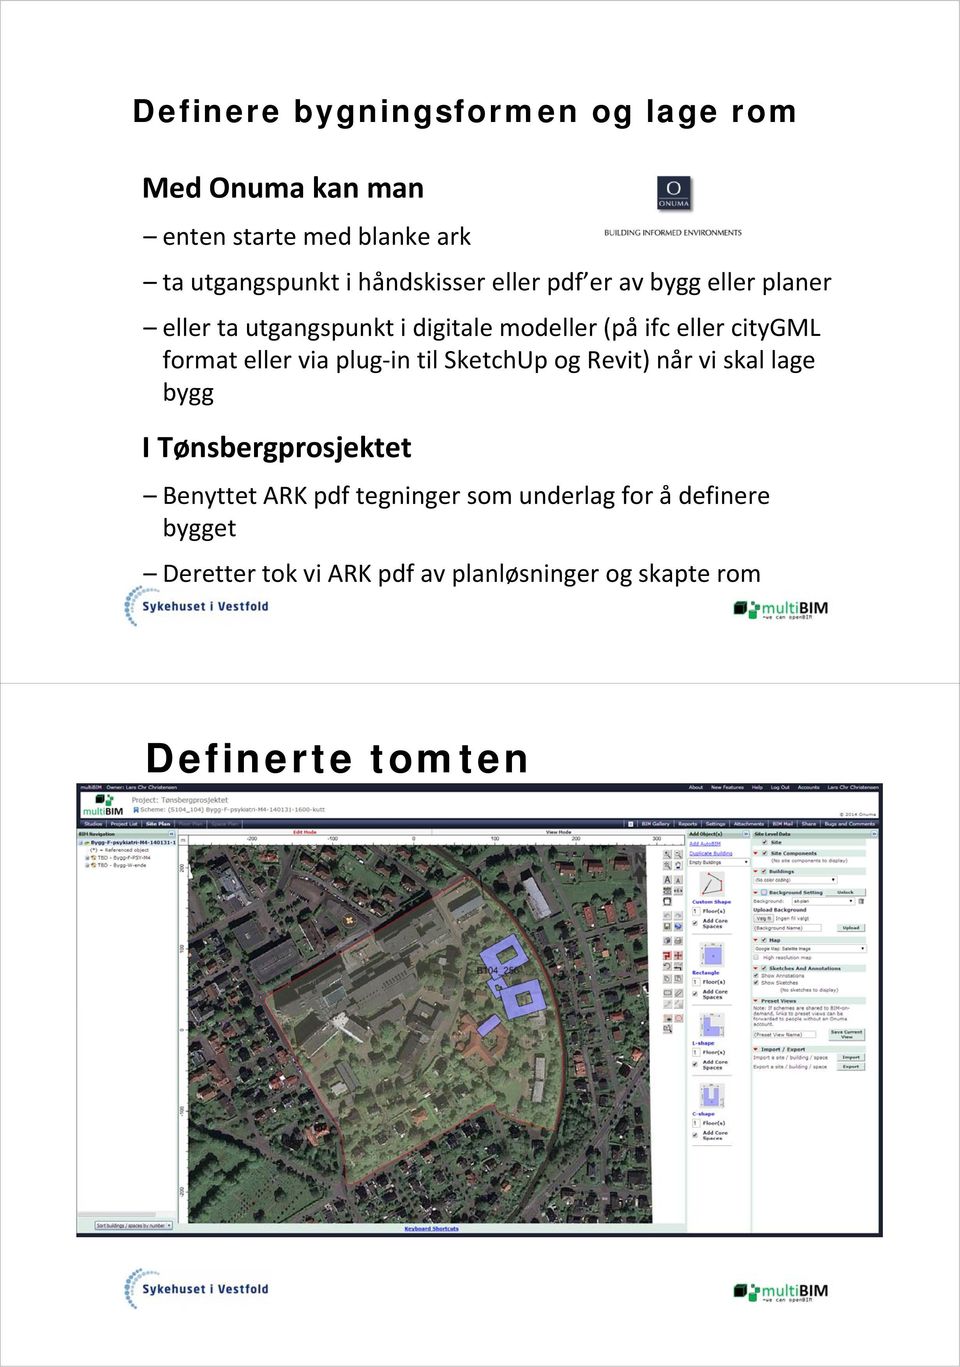 citygml format eller via plug in til SketchUp og Revit) når vi skal lage bygg I Tønsbergprosjektet Benyttet